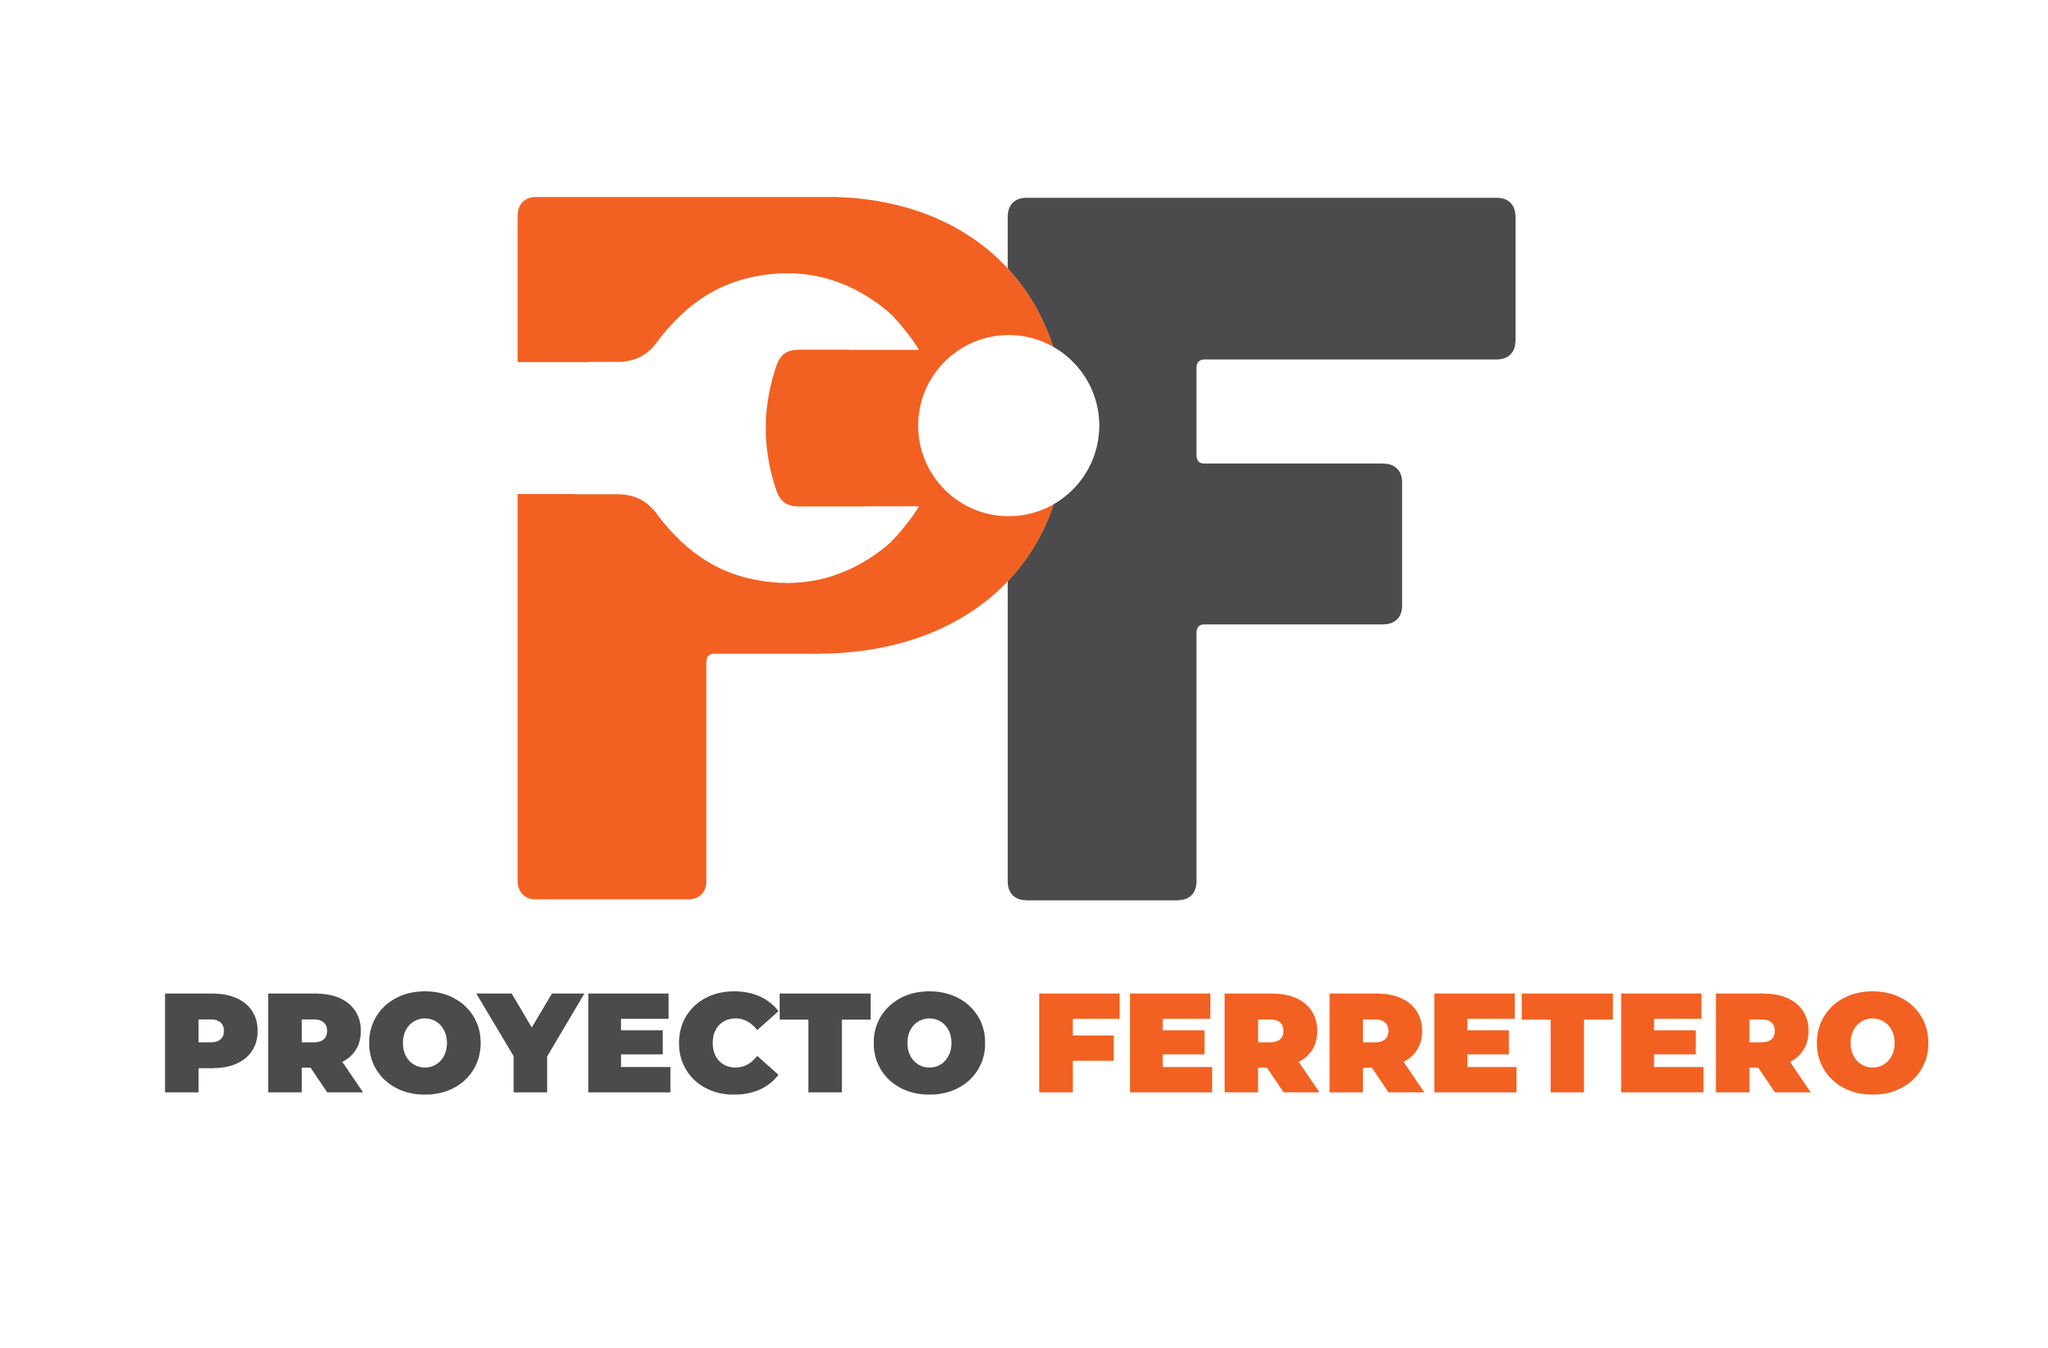 PROYECTO FERRETERO